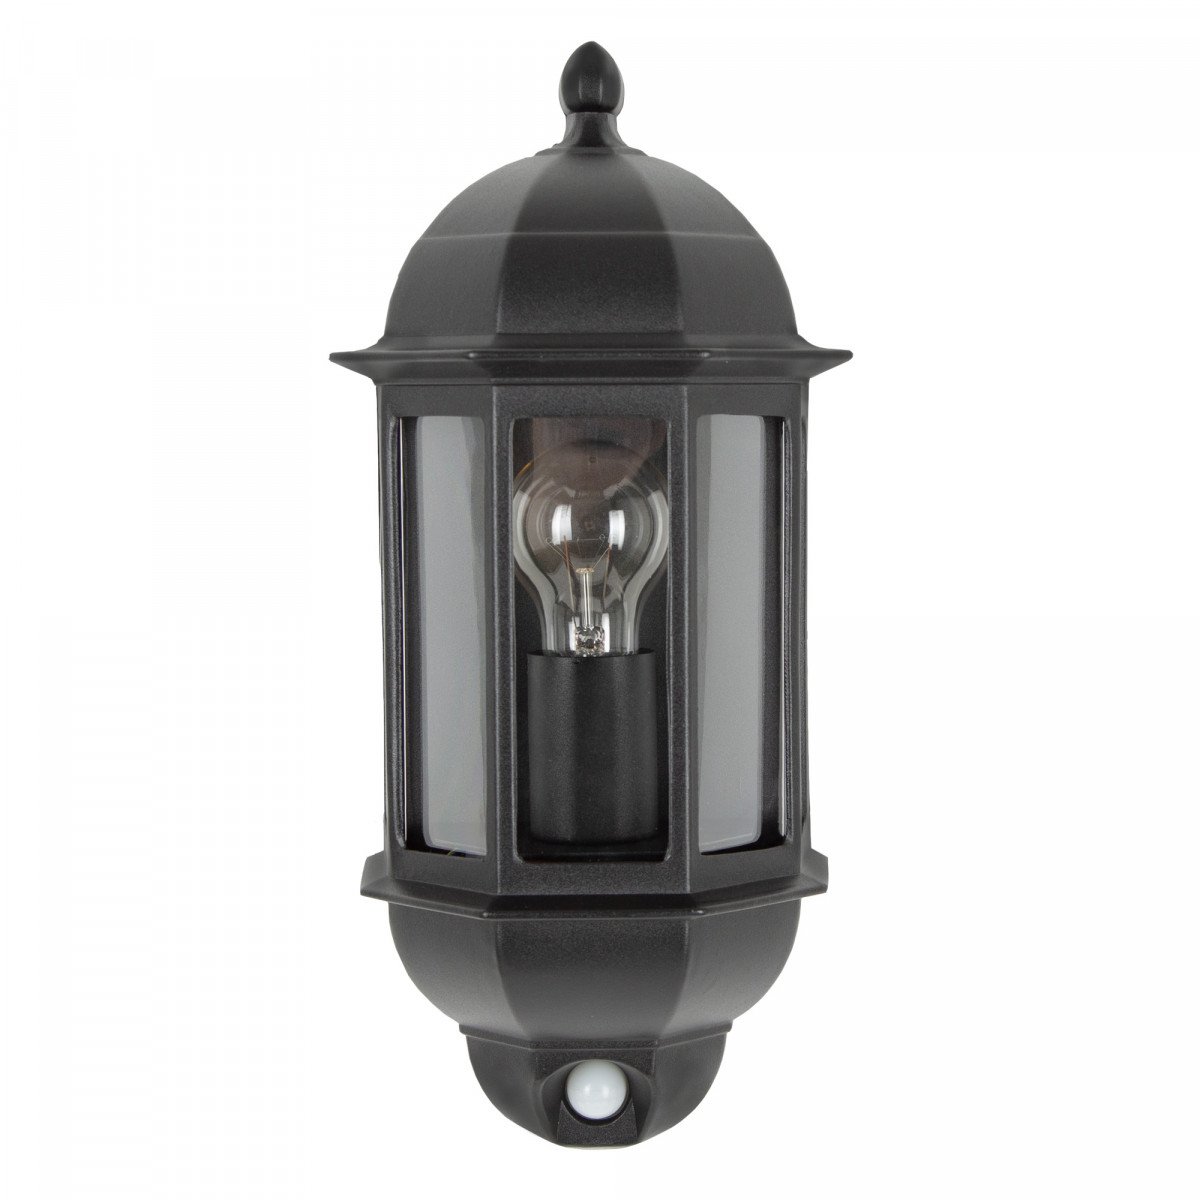 Lampe d'extérieur Verona lampe murale avec détecteur aluminium noir style classique